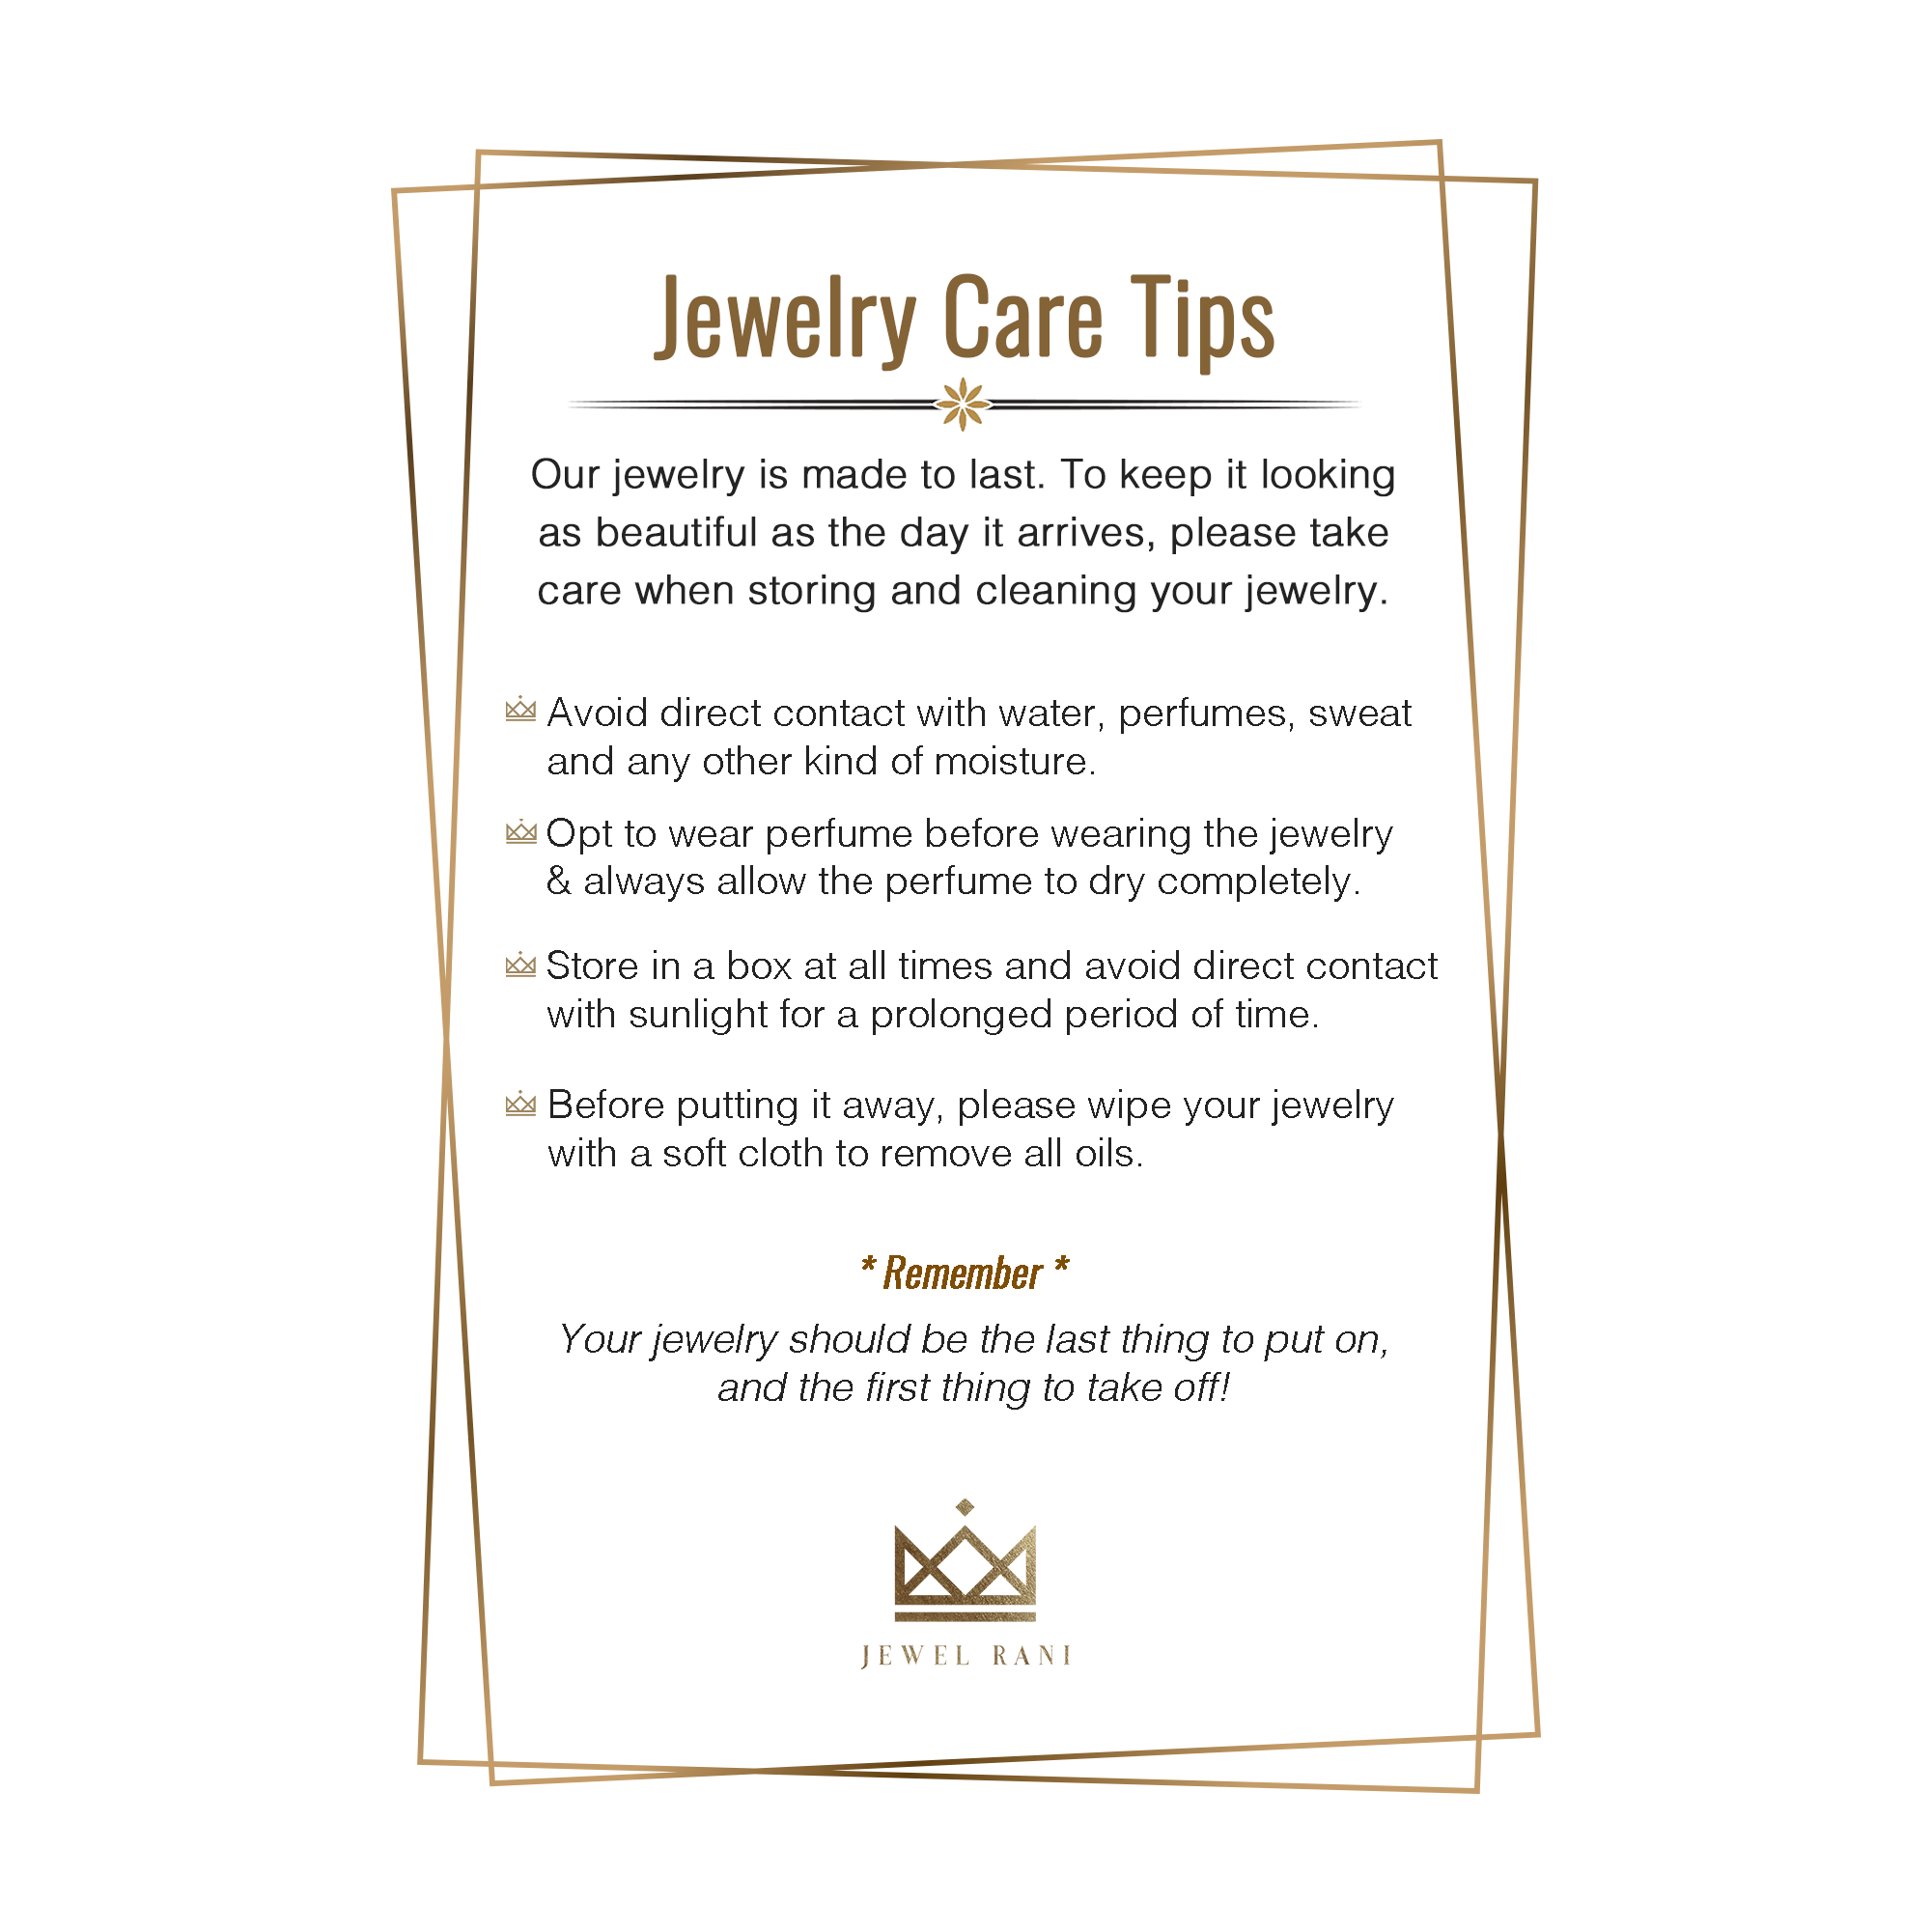 Jewelry Care Tips - Jewel Rani